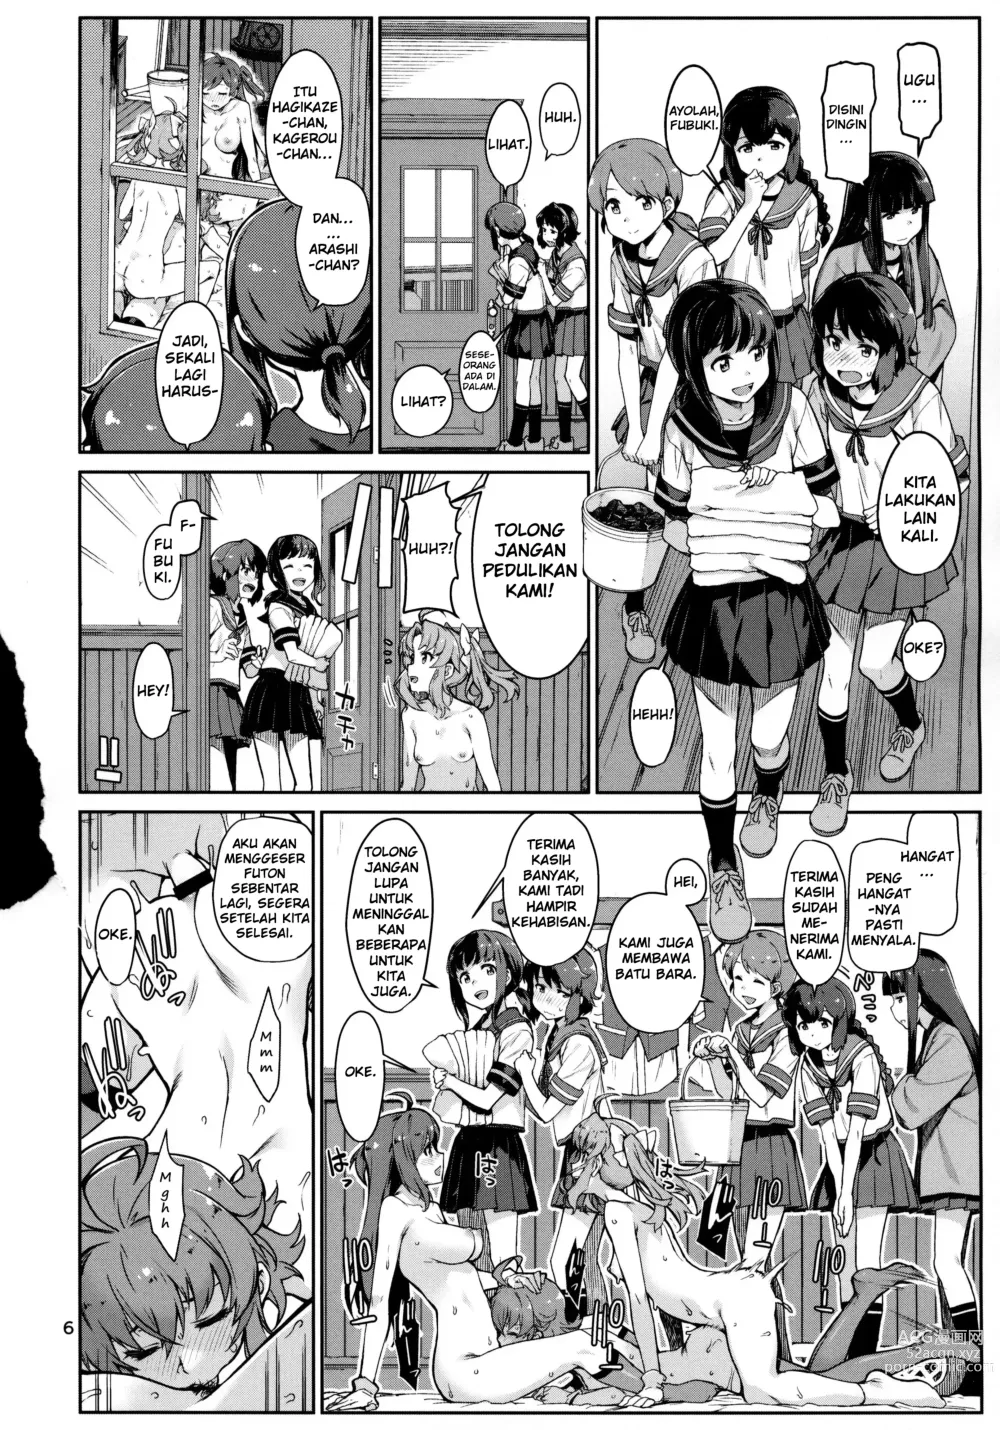 Page 6 of doujinshi Emoi Hazu